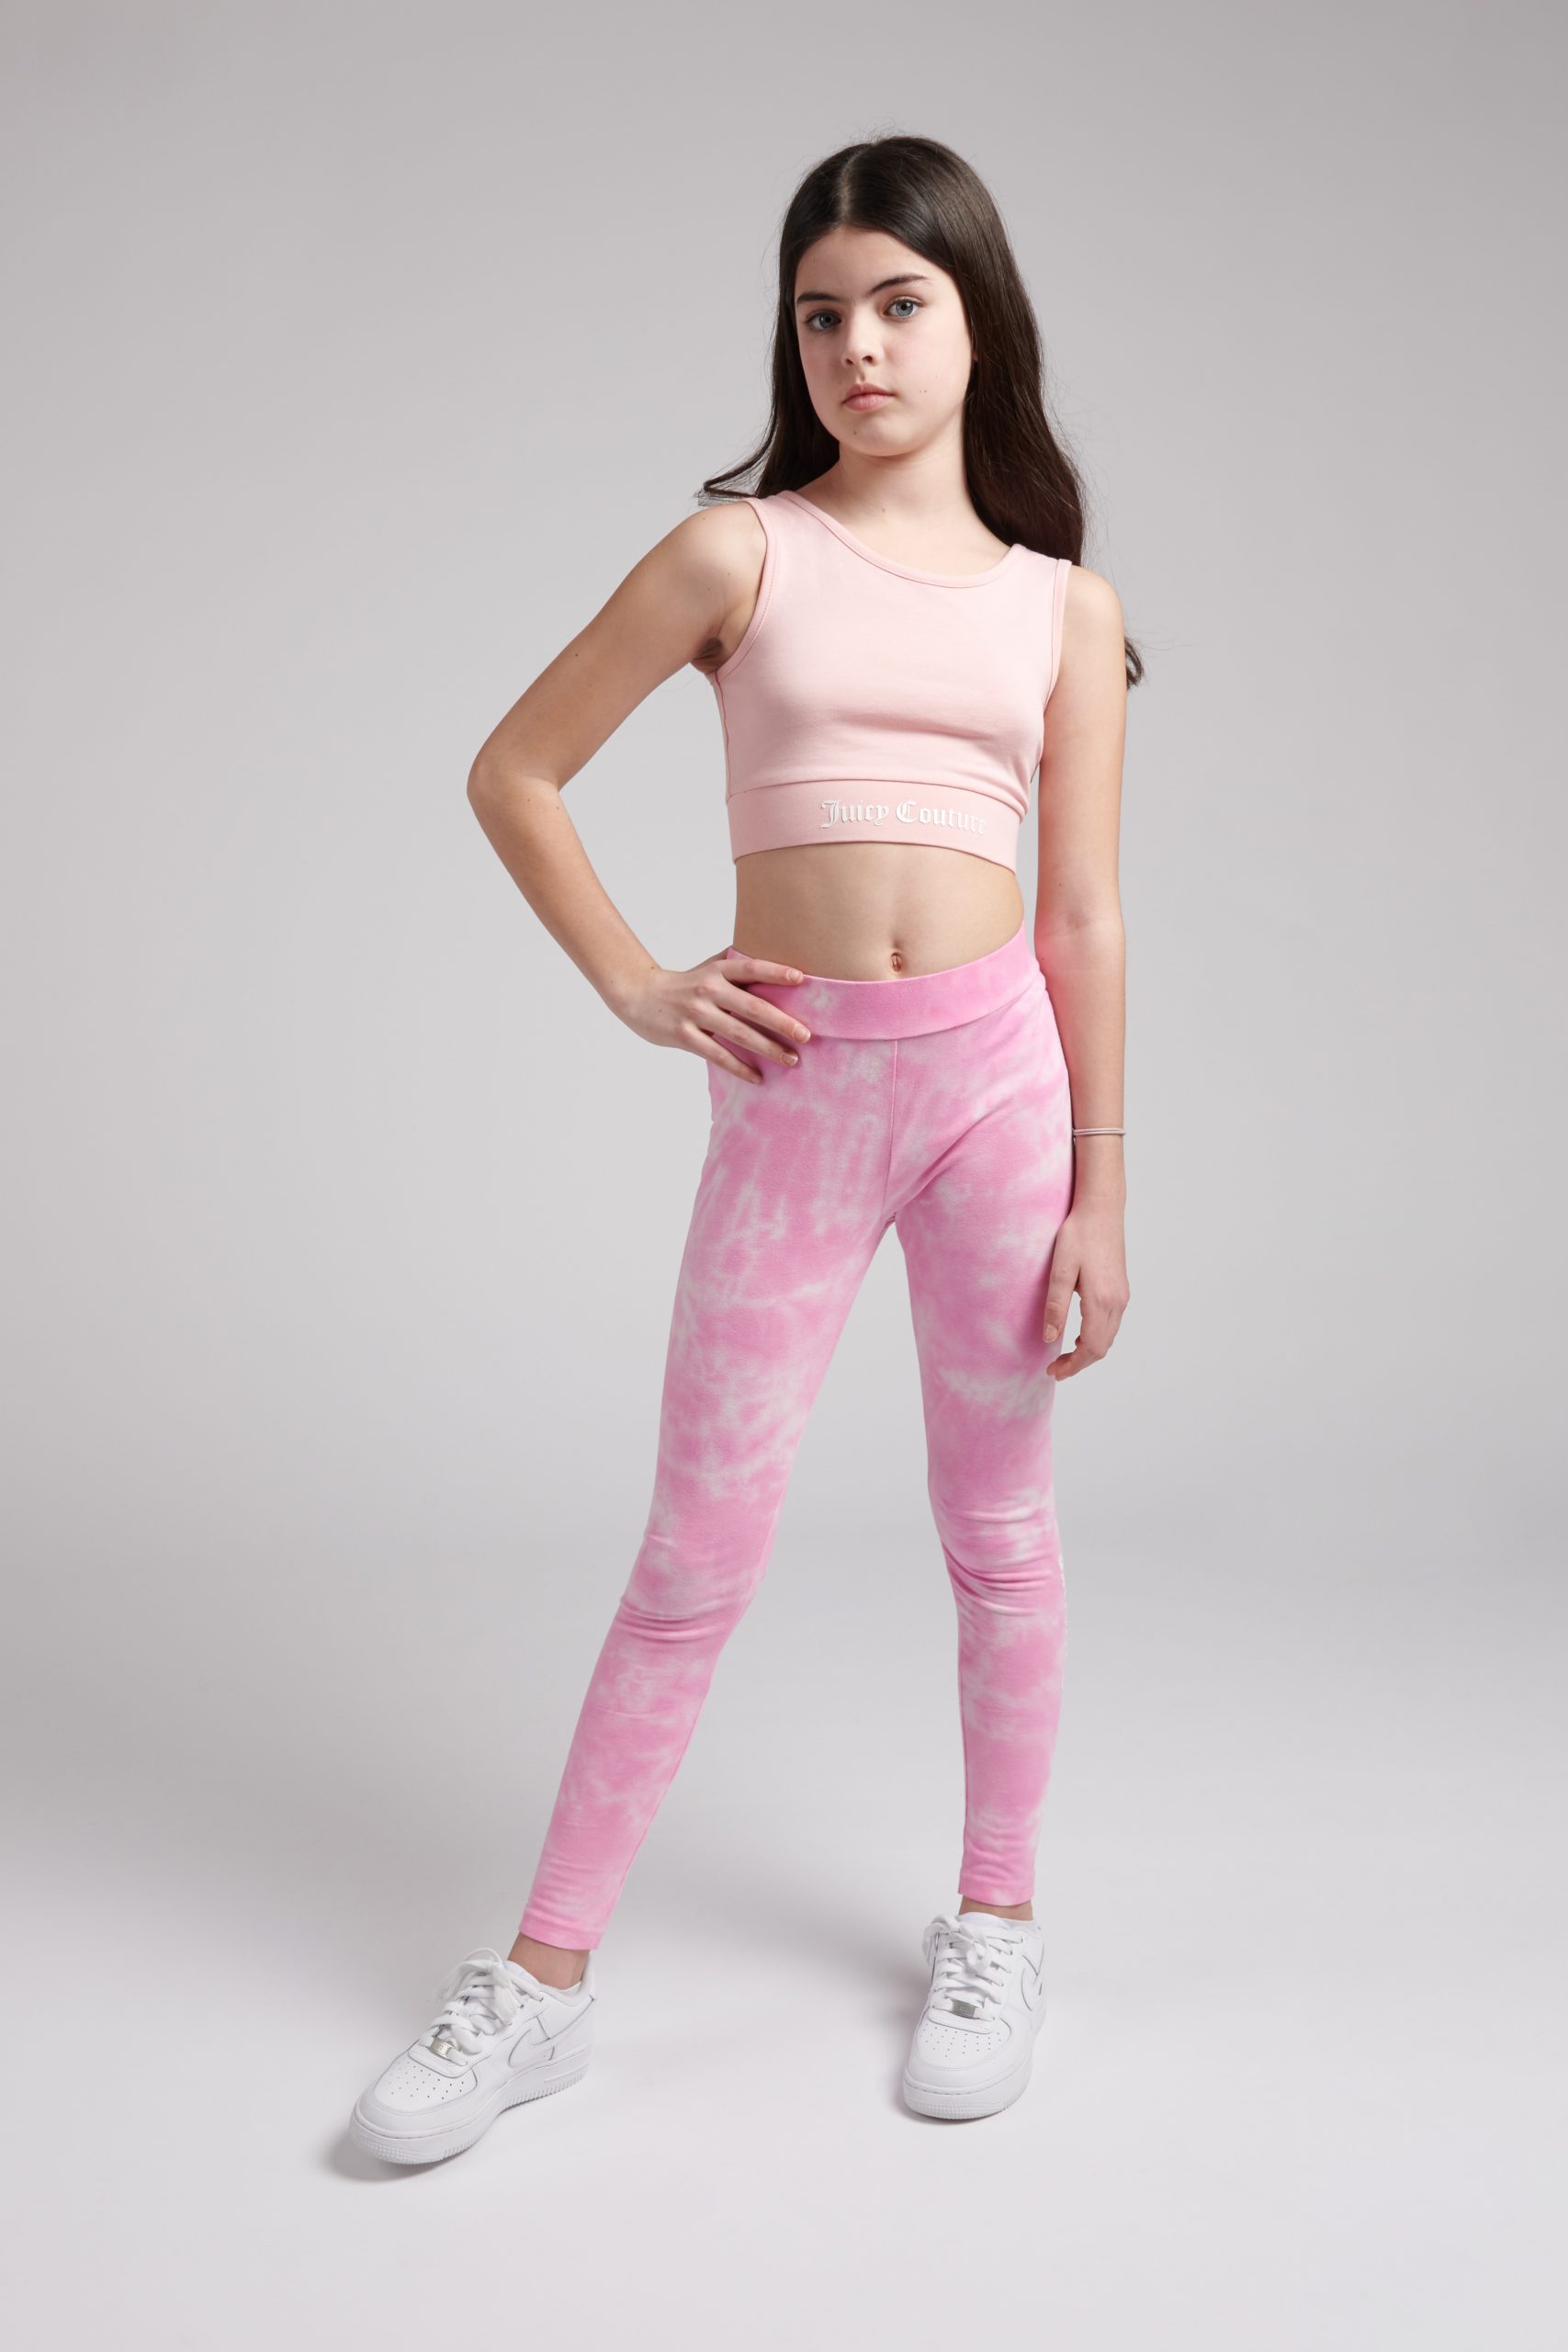 Juicy Couture Girls Tie Dye Leggings - Kids Life Clothing